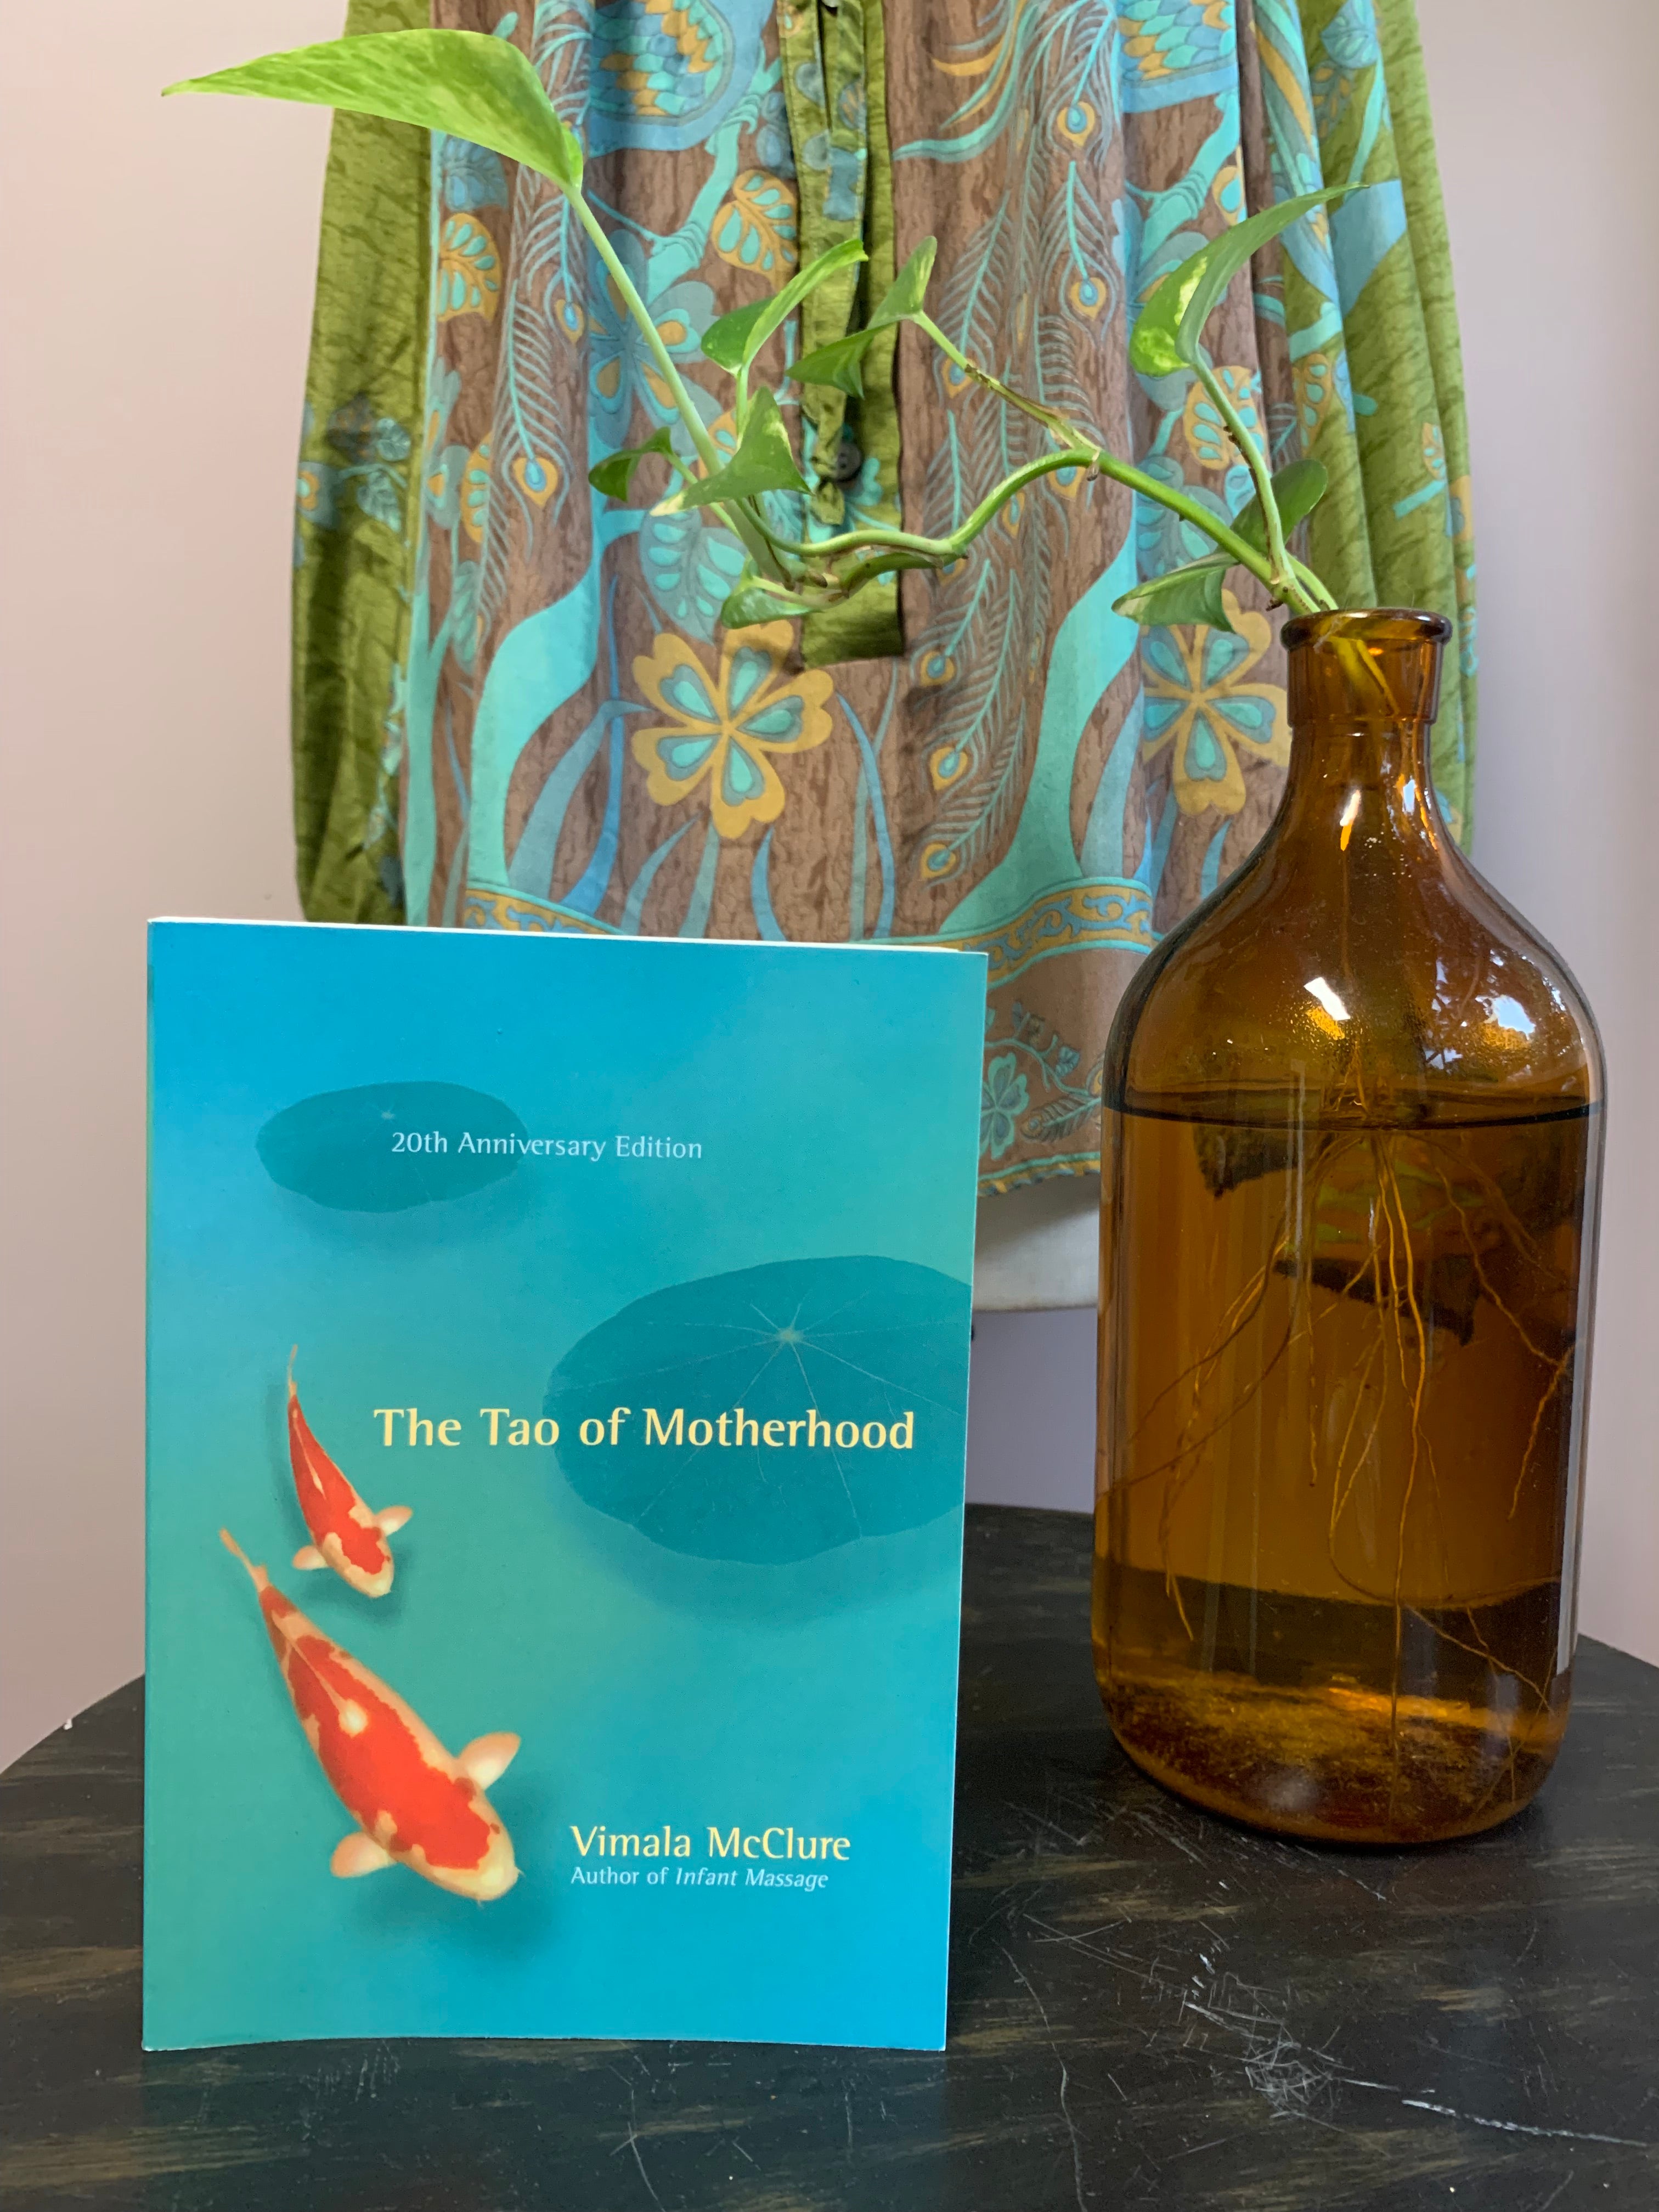 Books for spiritual guidance: The Tao of Motherhood / Tao Te Ching